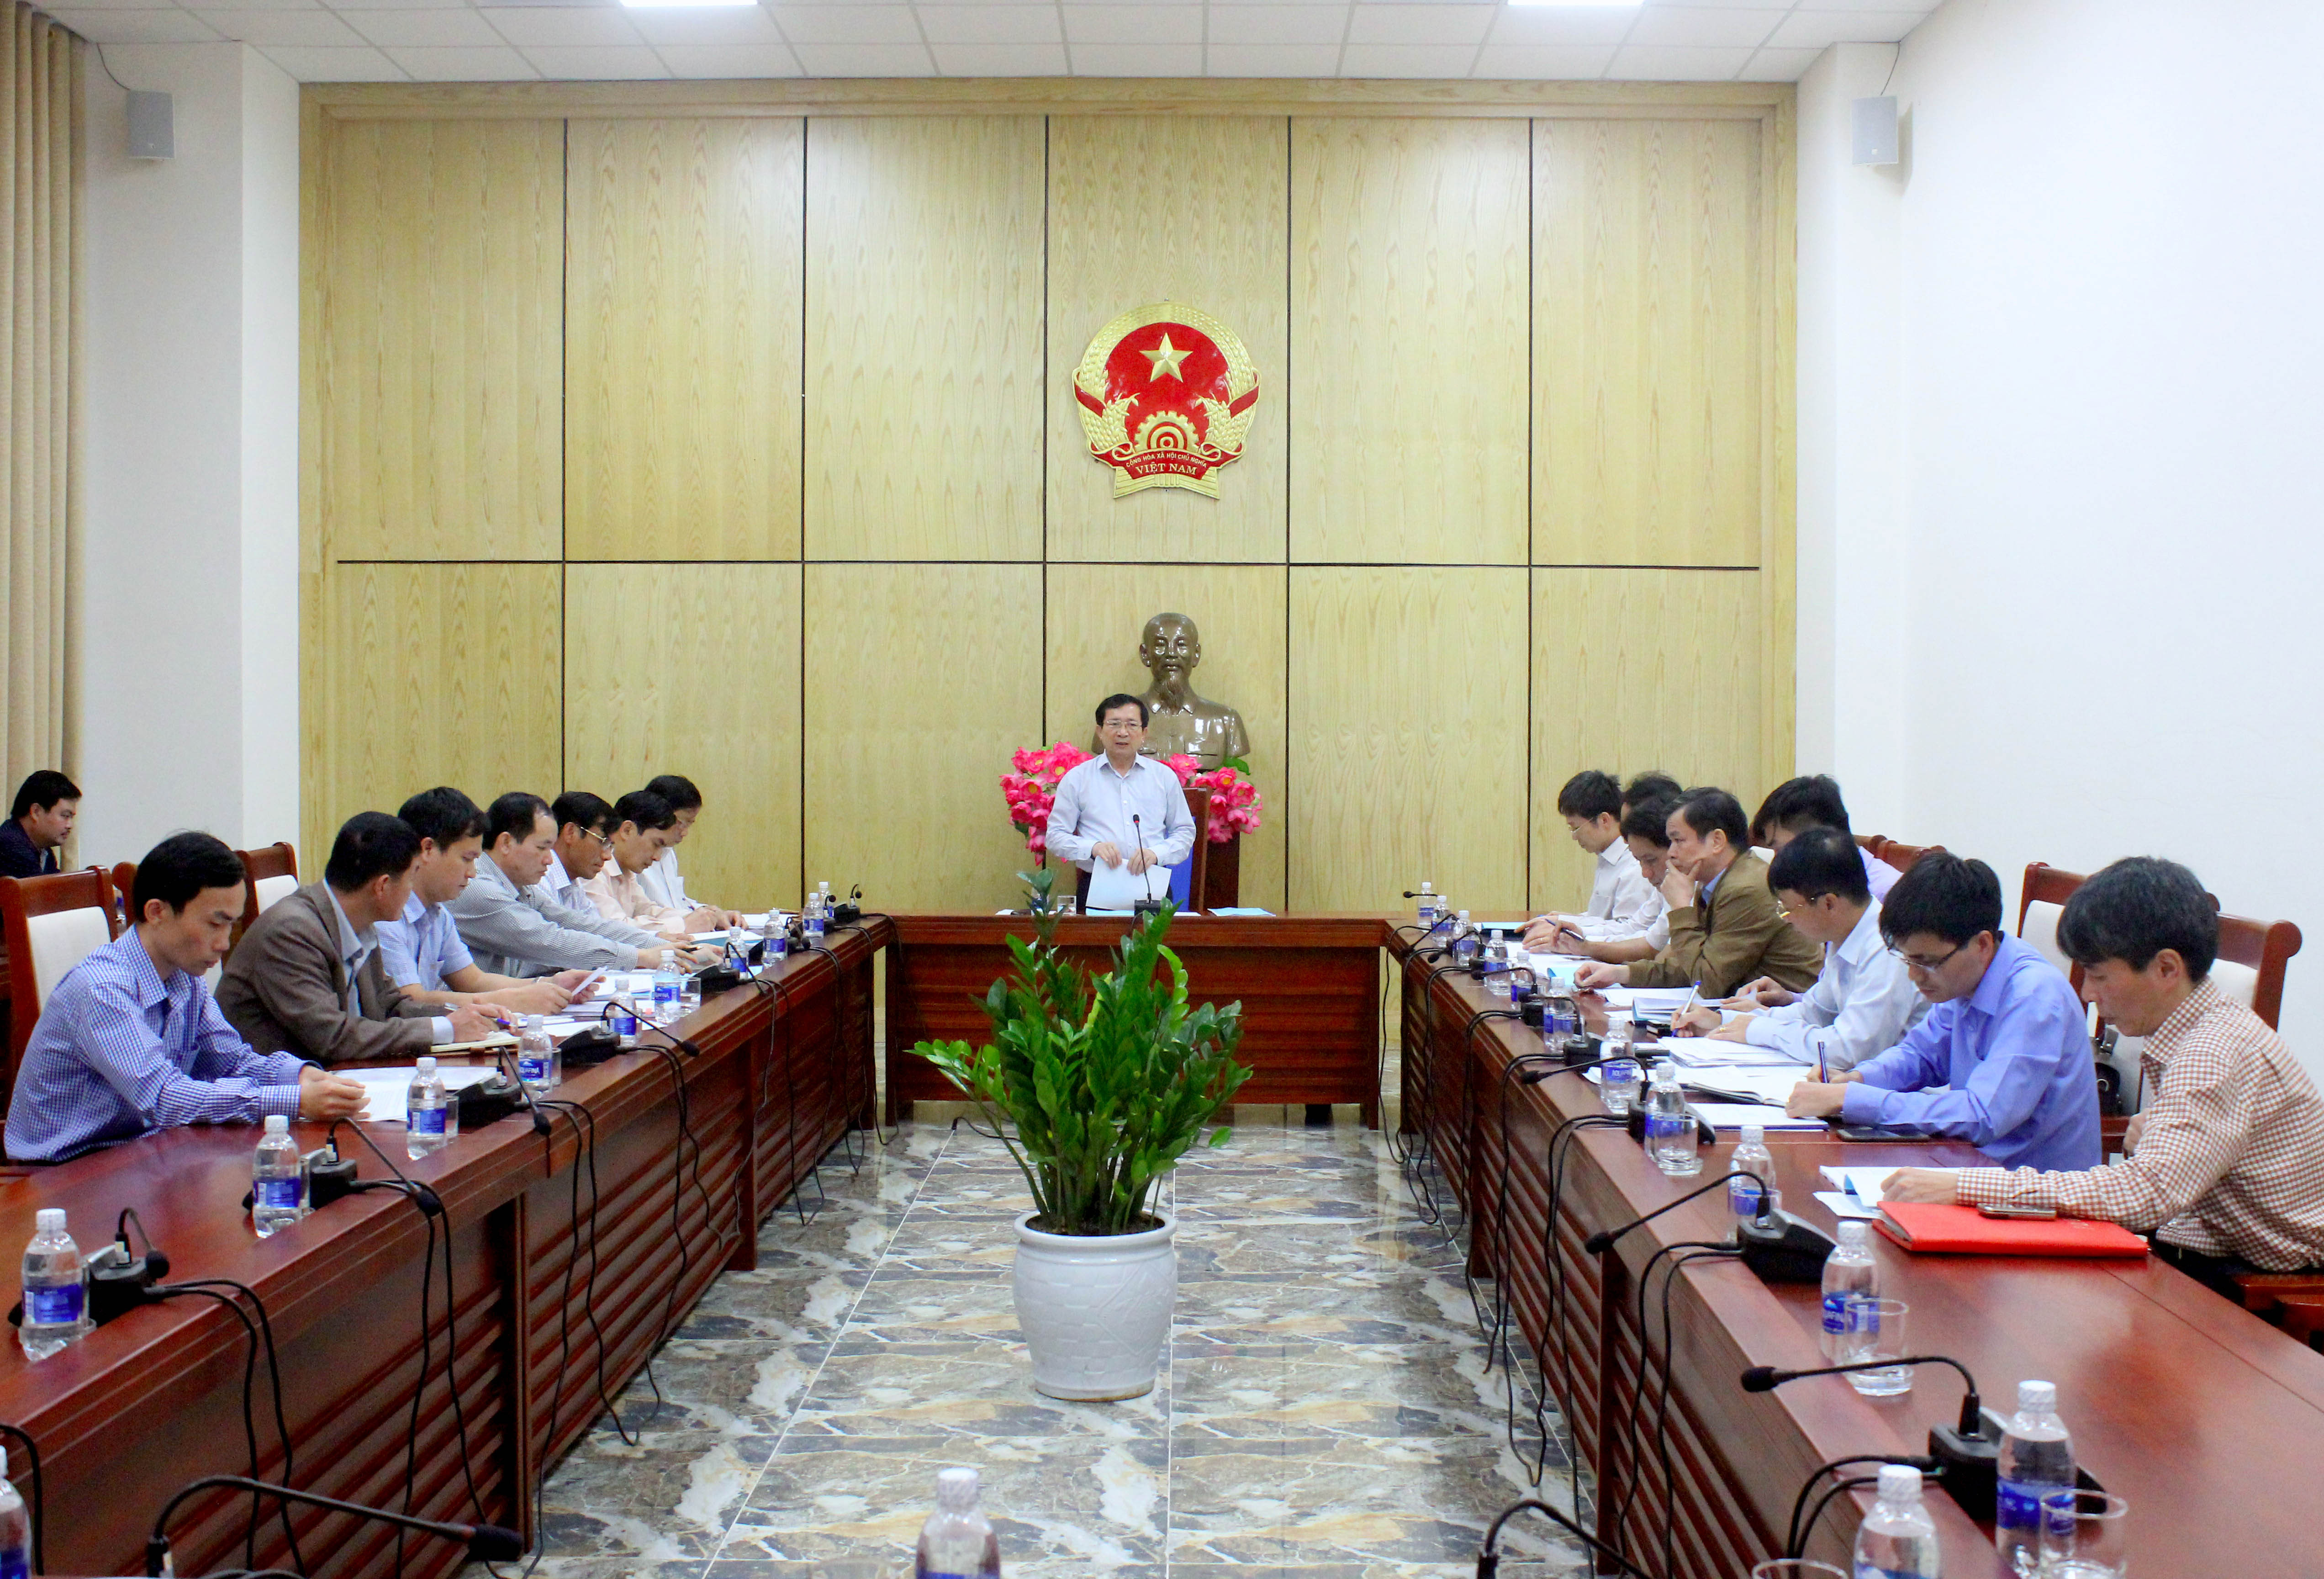 Các đại biểu dự họp góp ý kiến vào đề án điều chỉnh địa giới hành chính huyện Nghi lộc để mở rộng thị xã Cửa Lò. Ảnh: Quang An